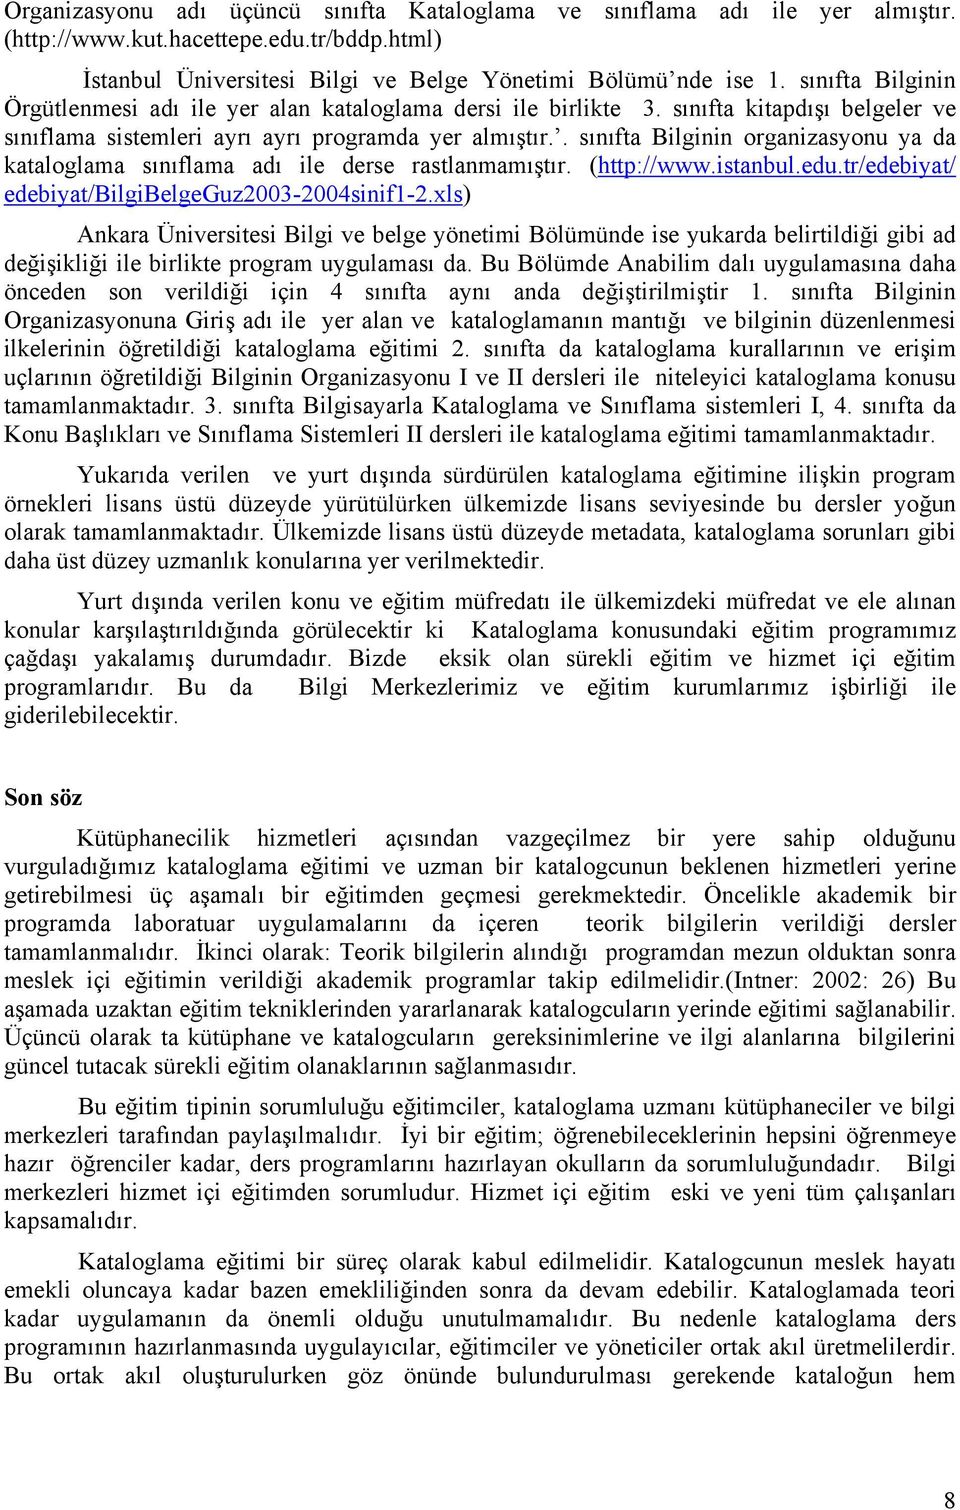 . sınıfta Bilginin organizasyonu ya da kataloglama sınıflama adı ile derse rastlanmamıştır. (http://www.istanbul.edu.tr/edebiyat/ edebiyat/bilgibelgeguz2003-2004sinif1-2.